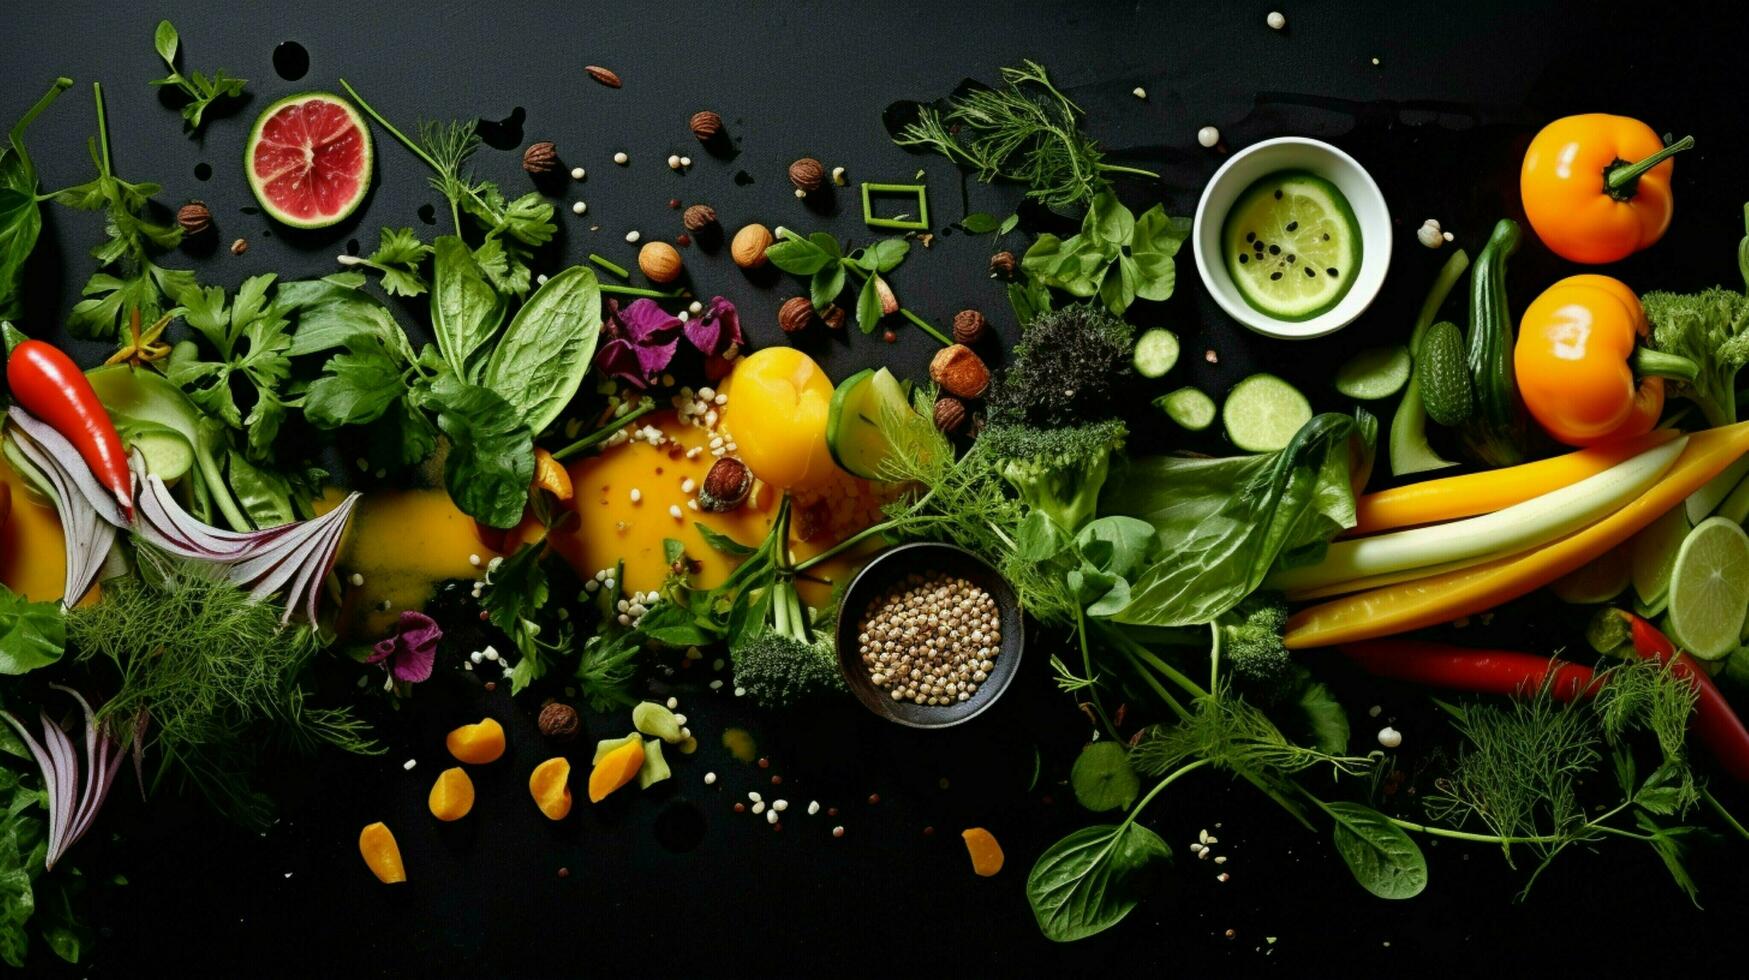 fresco legumes e ervas faço saudável gourmet refeições foto